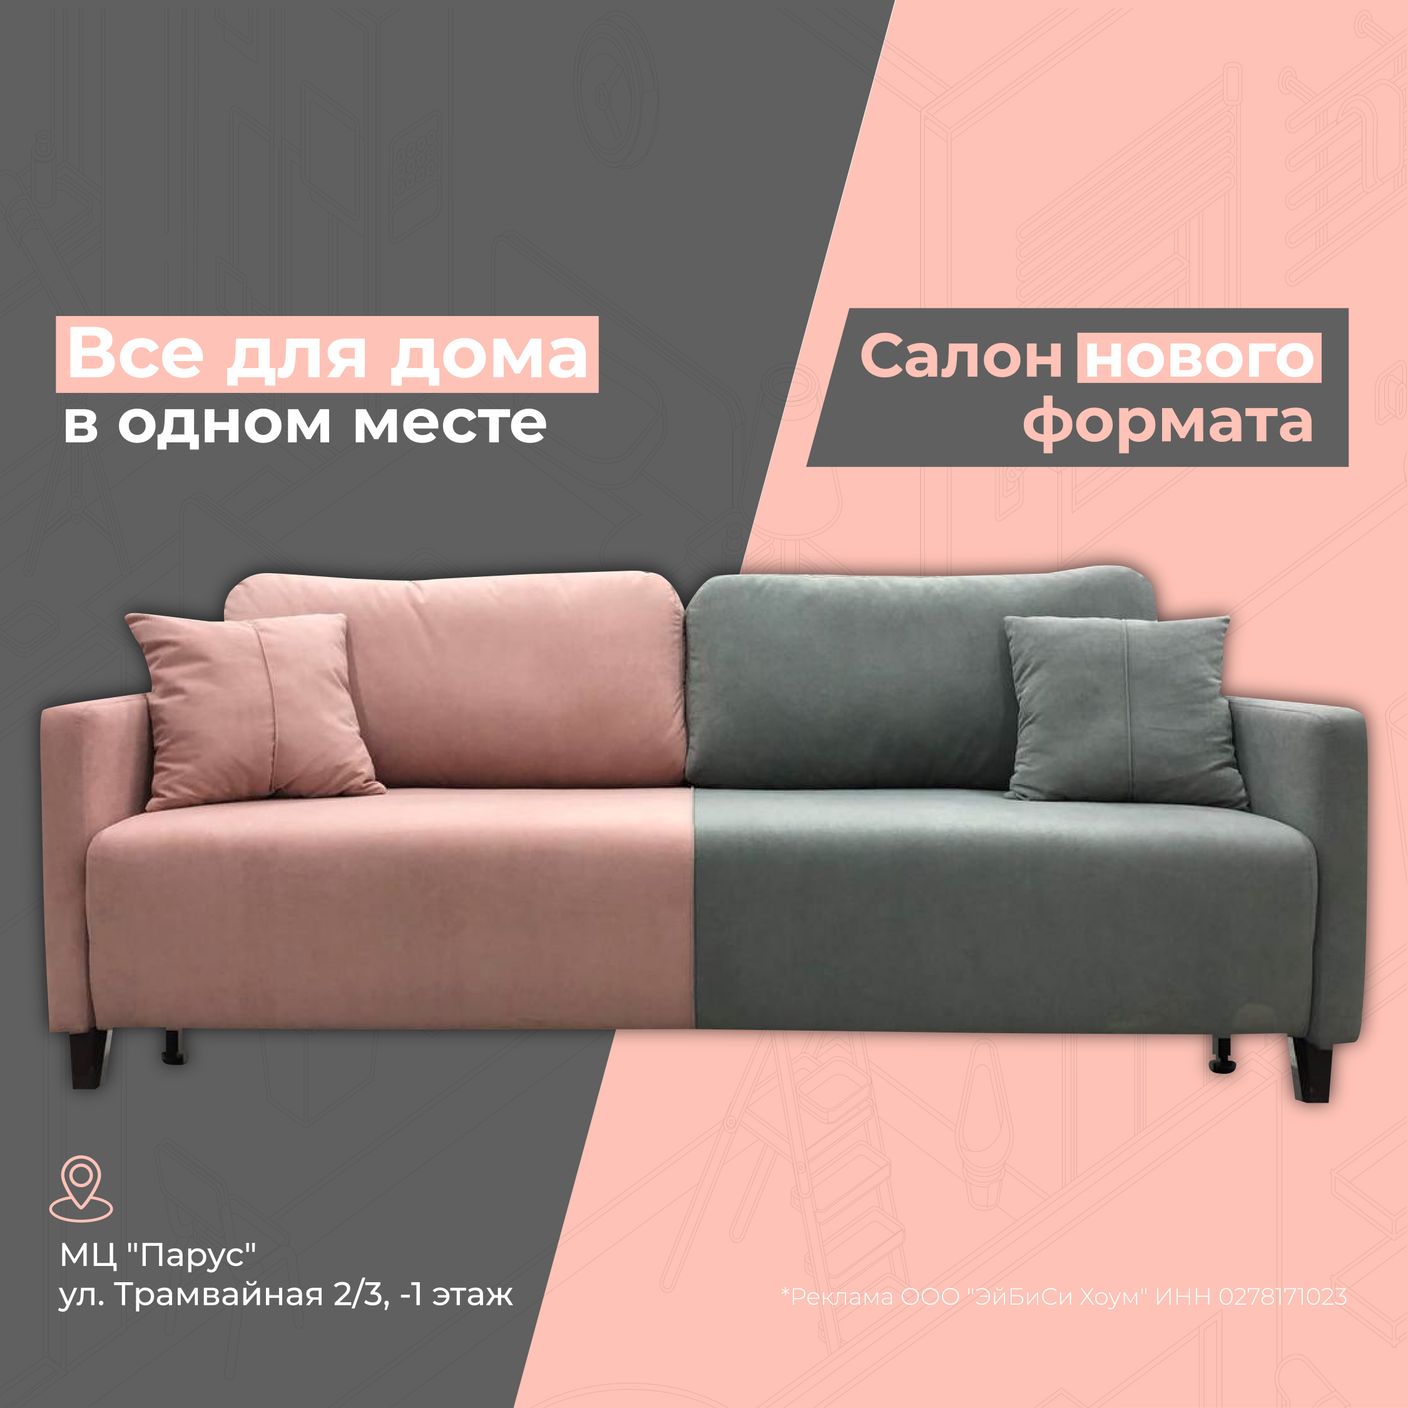 Интернет магазин «Эра-мебели» — каталог и цены недорогой мебели Российских фабрик.